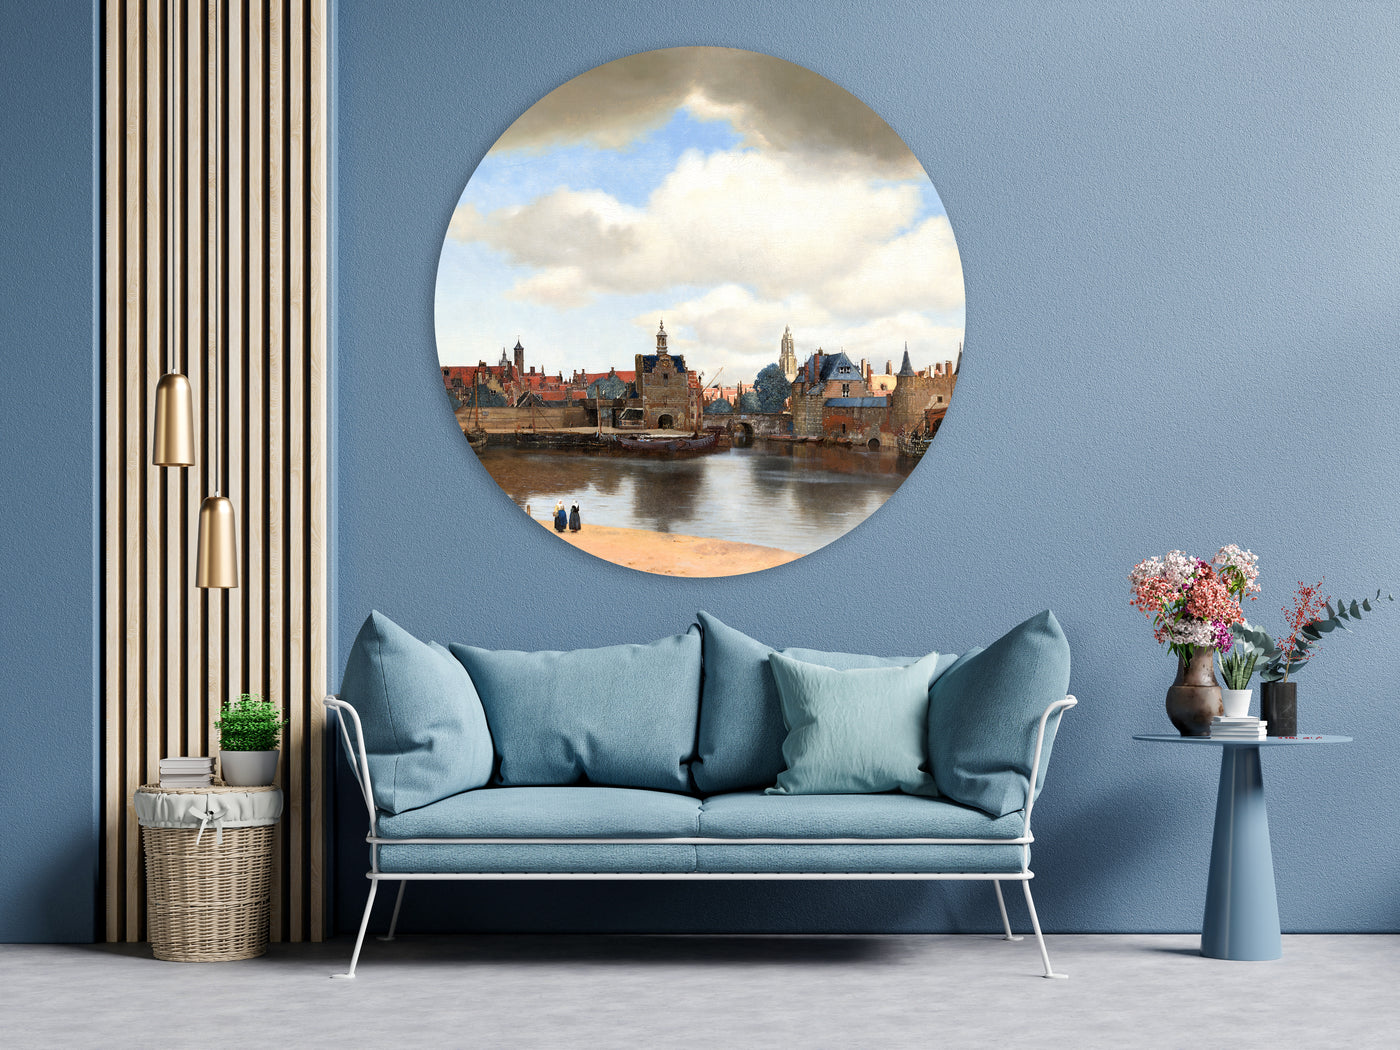 Gezicht op Delft - Johannes Vermeer